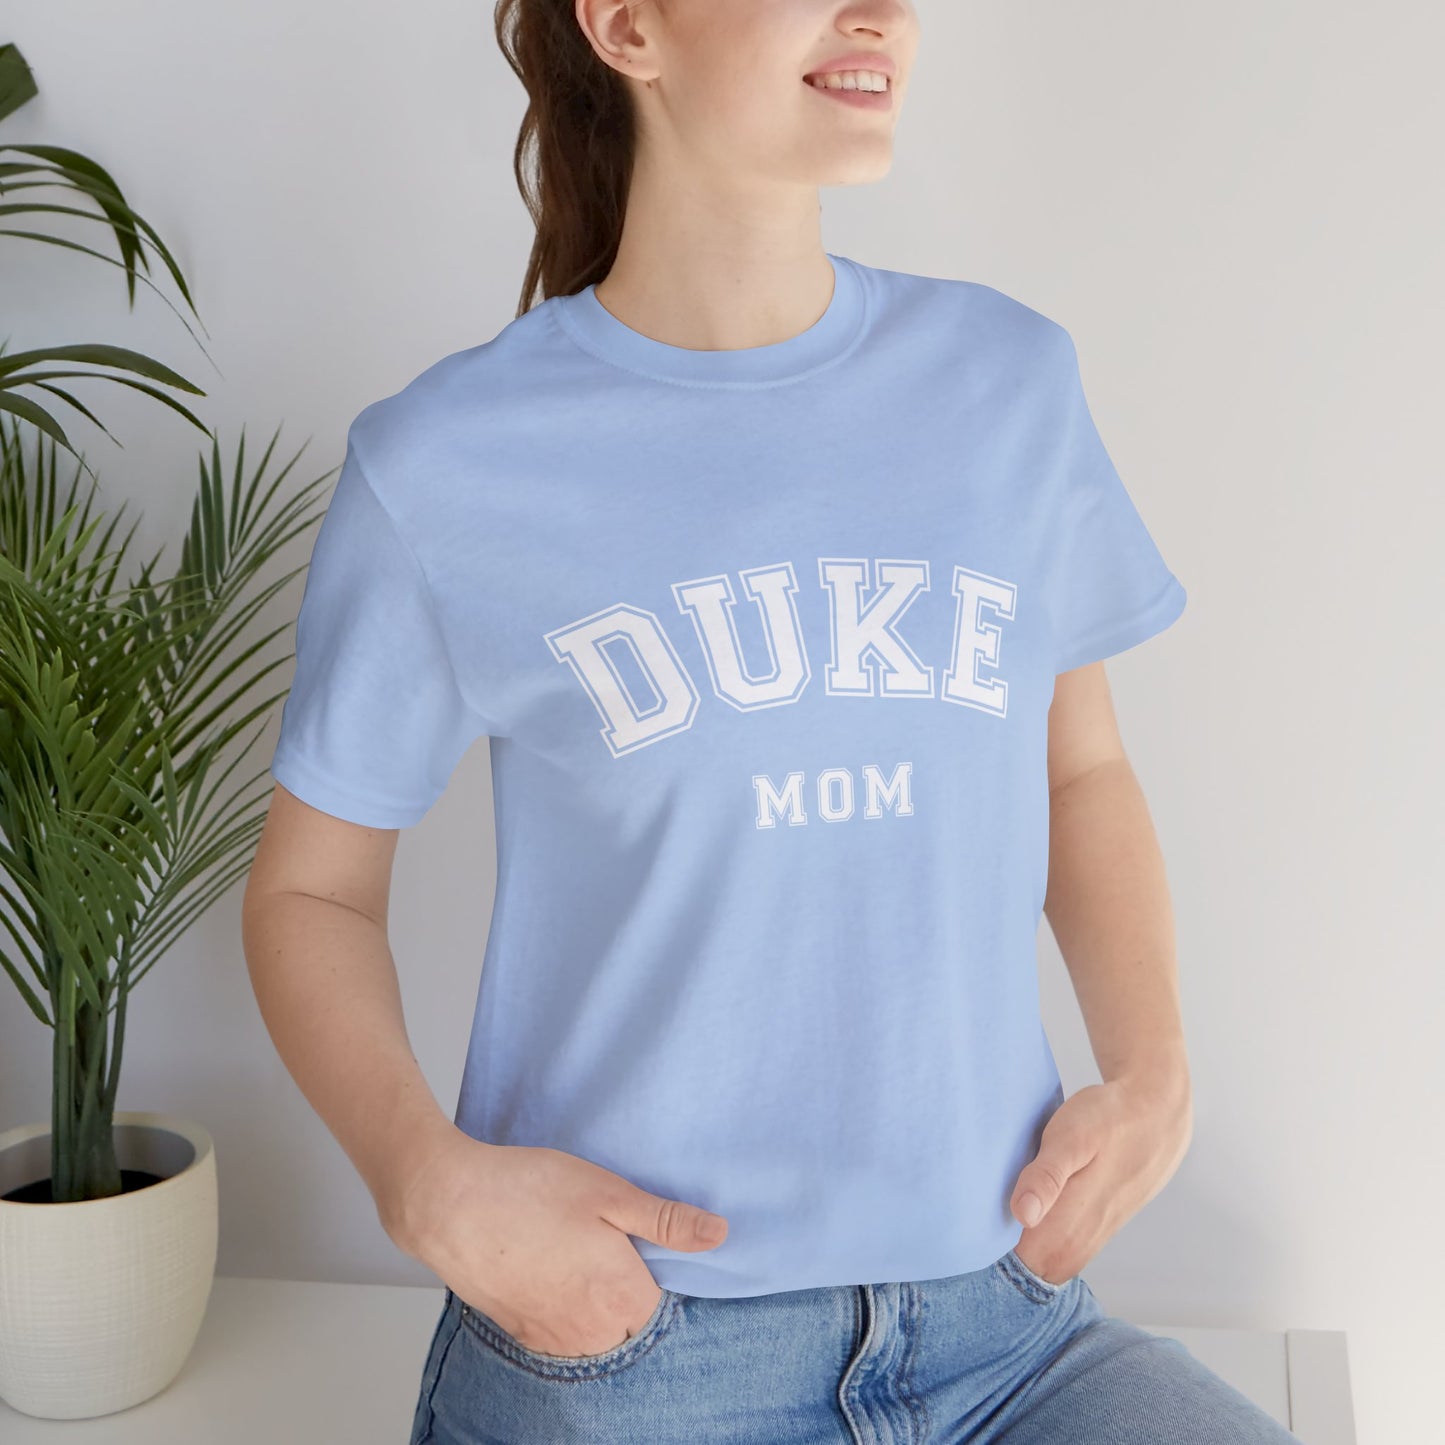 DUKE Mom, parent shirt- Adult, Regular Fit, Soft Cotton, T-shirt